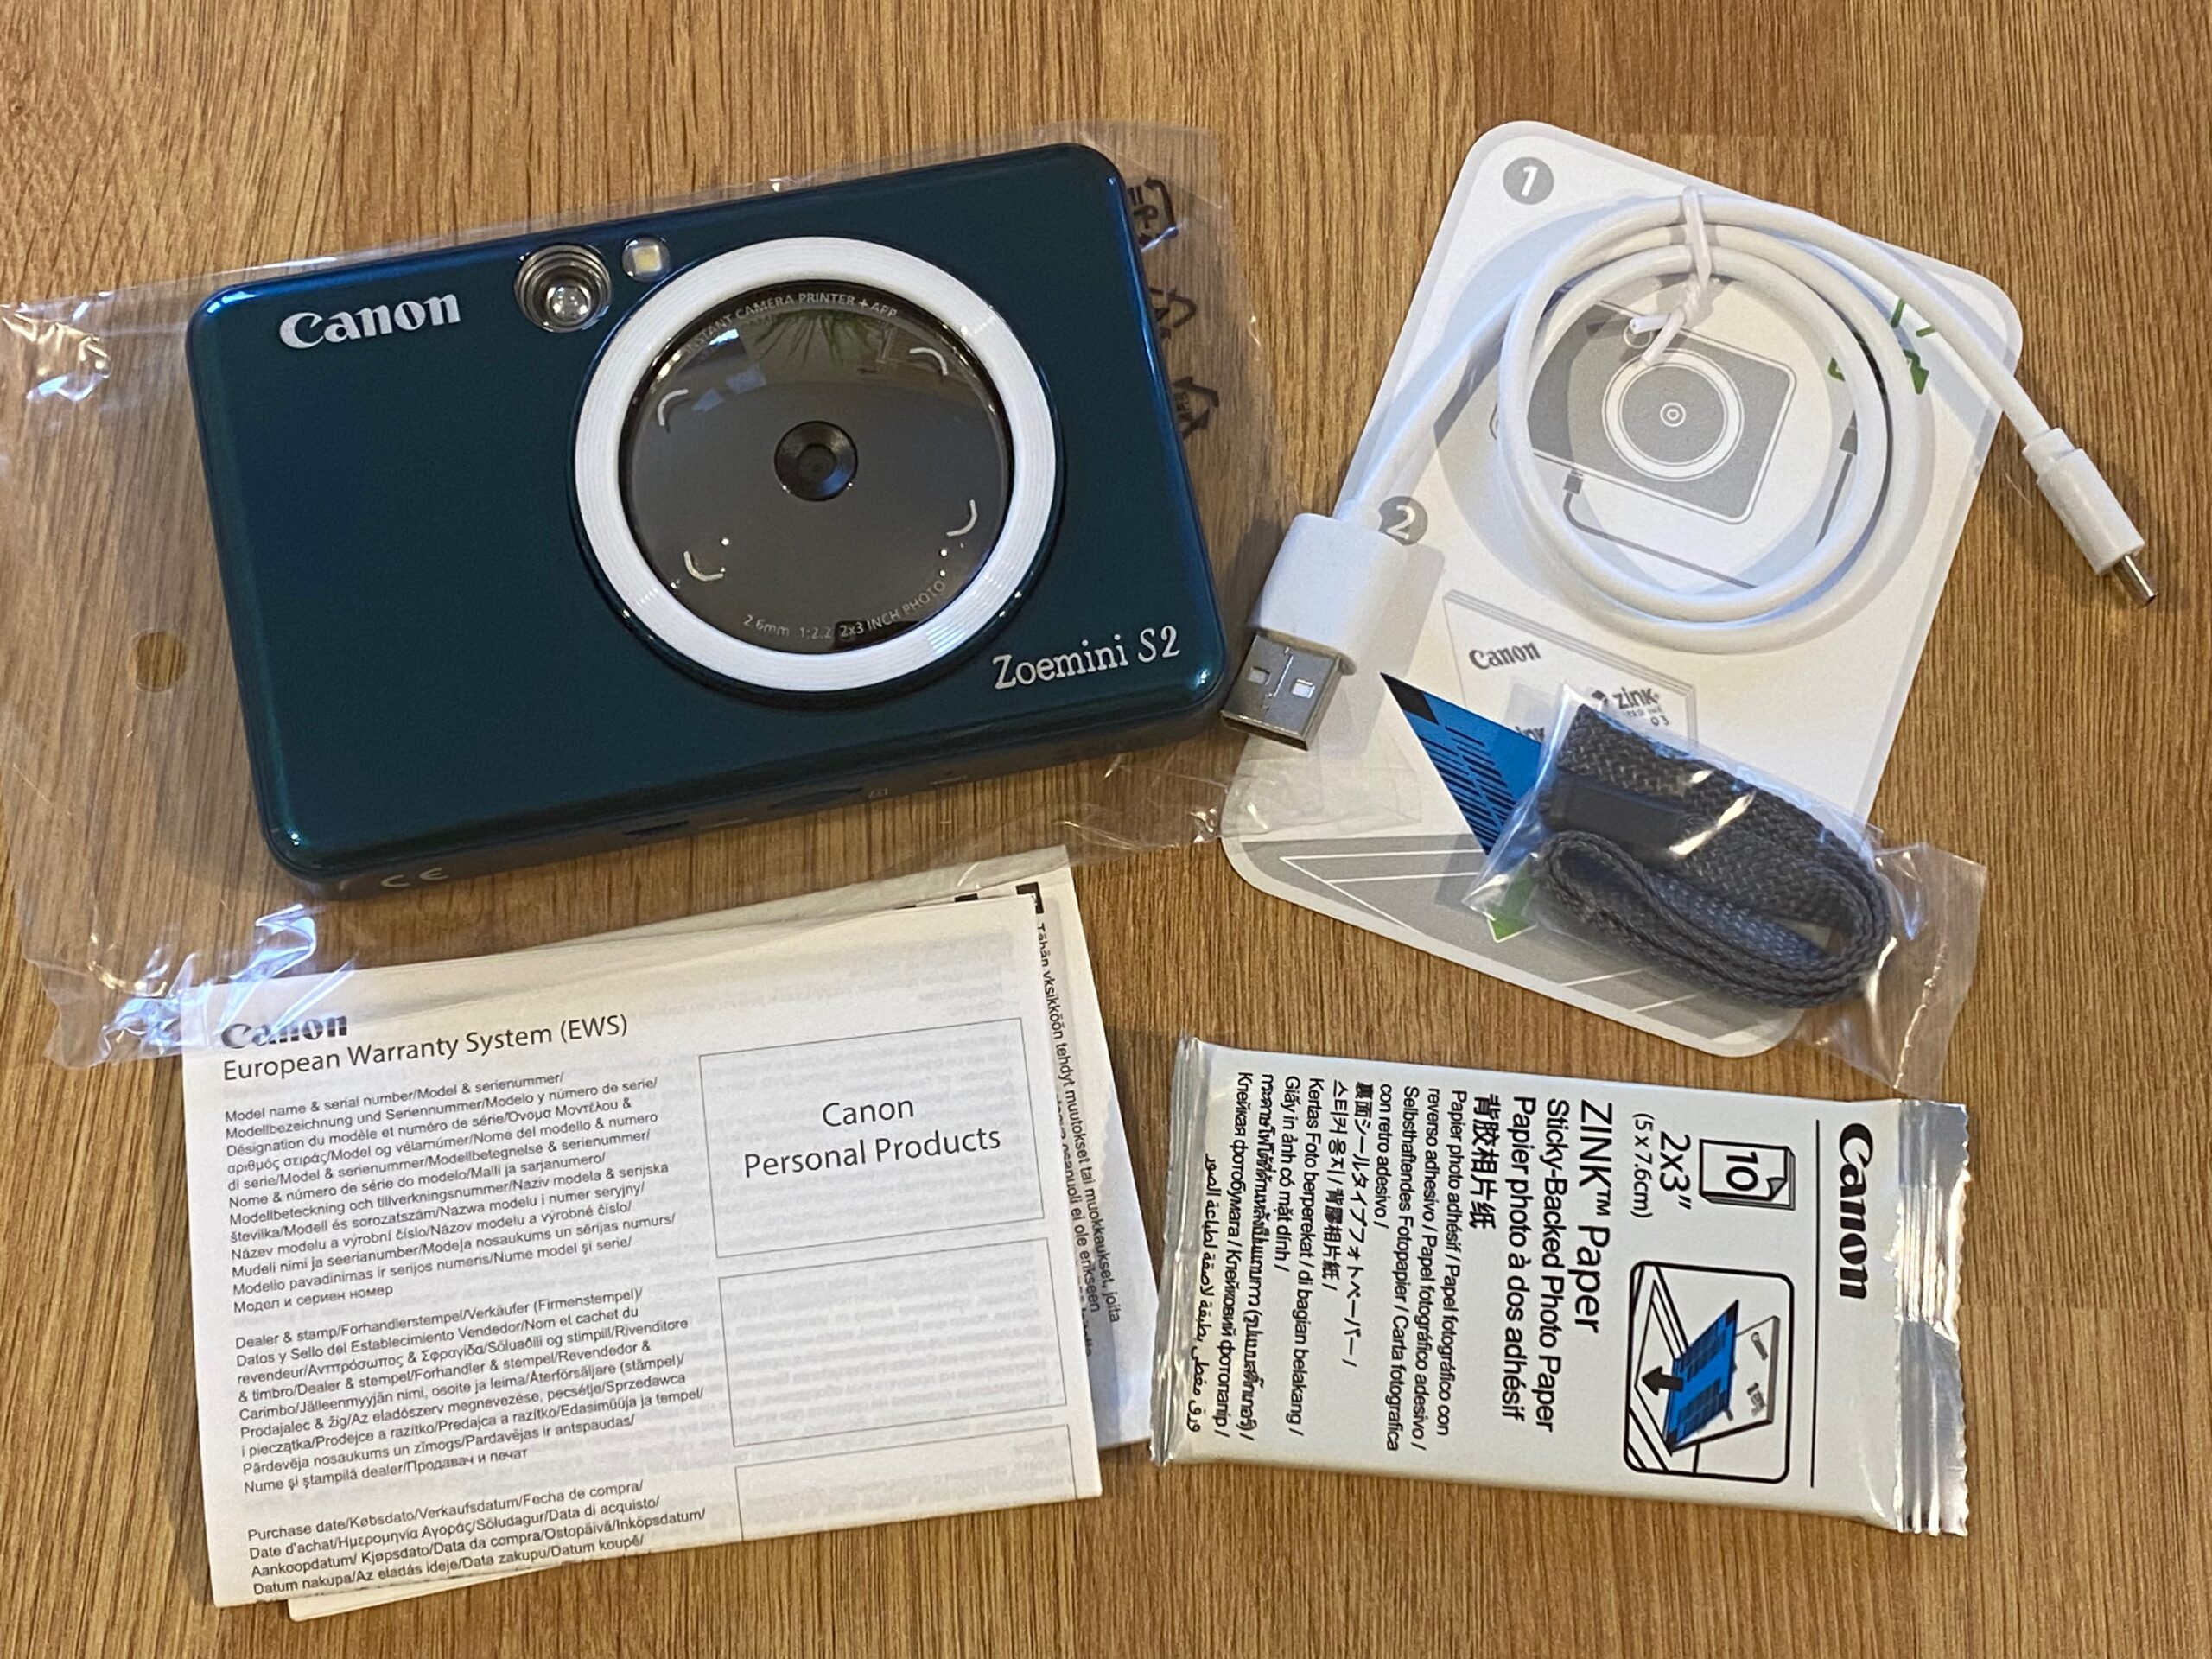 Canon Zoemini 2 Mini Photo Printer review